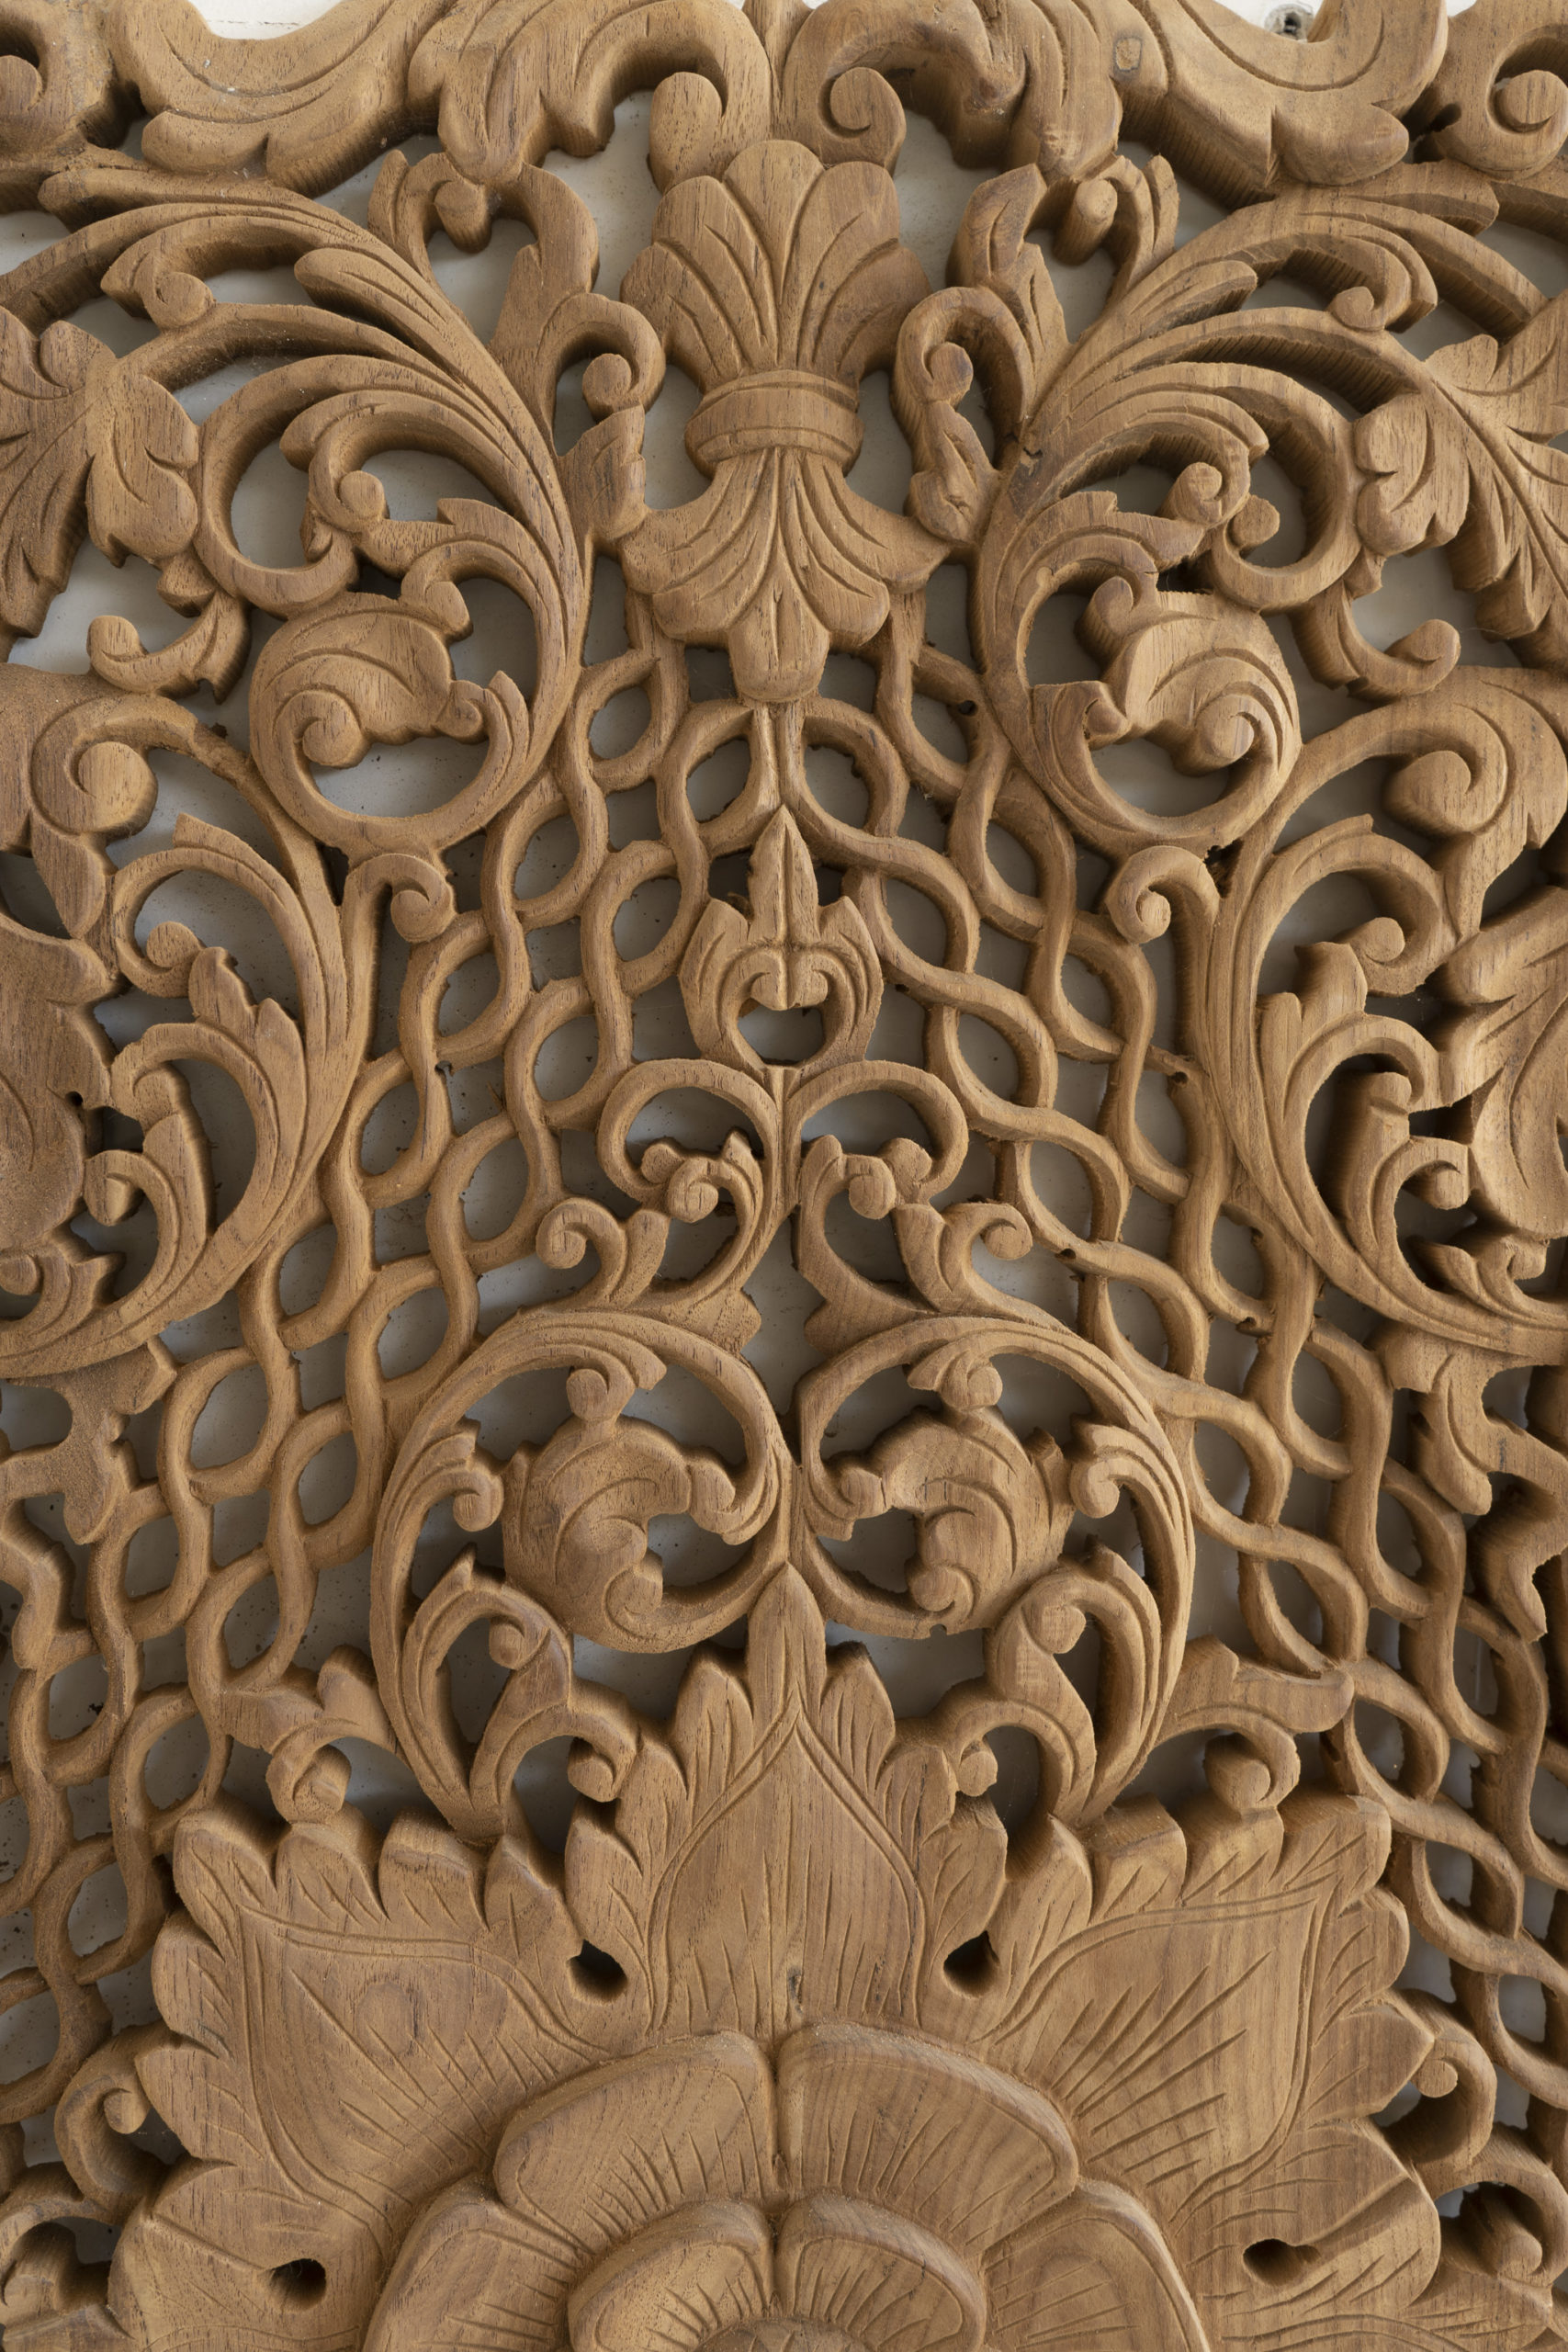 Lotus Teak Wood Carving Plaque - Siam Sawadee